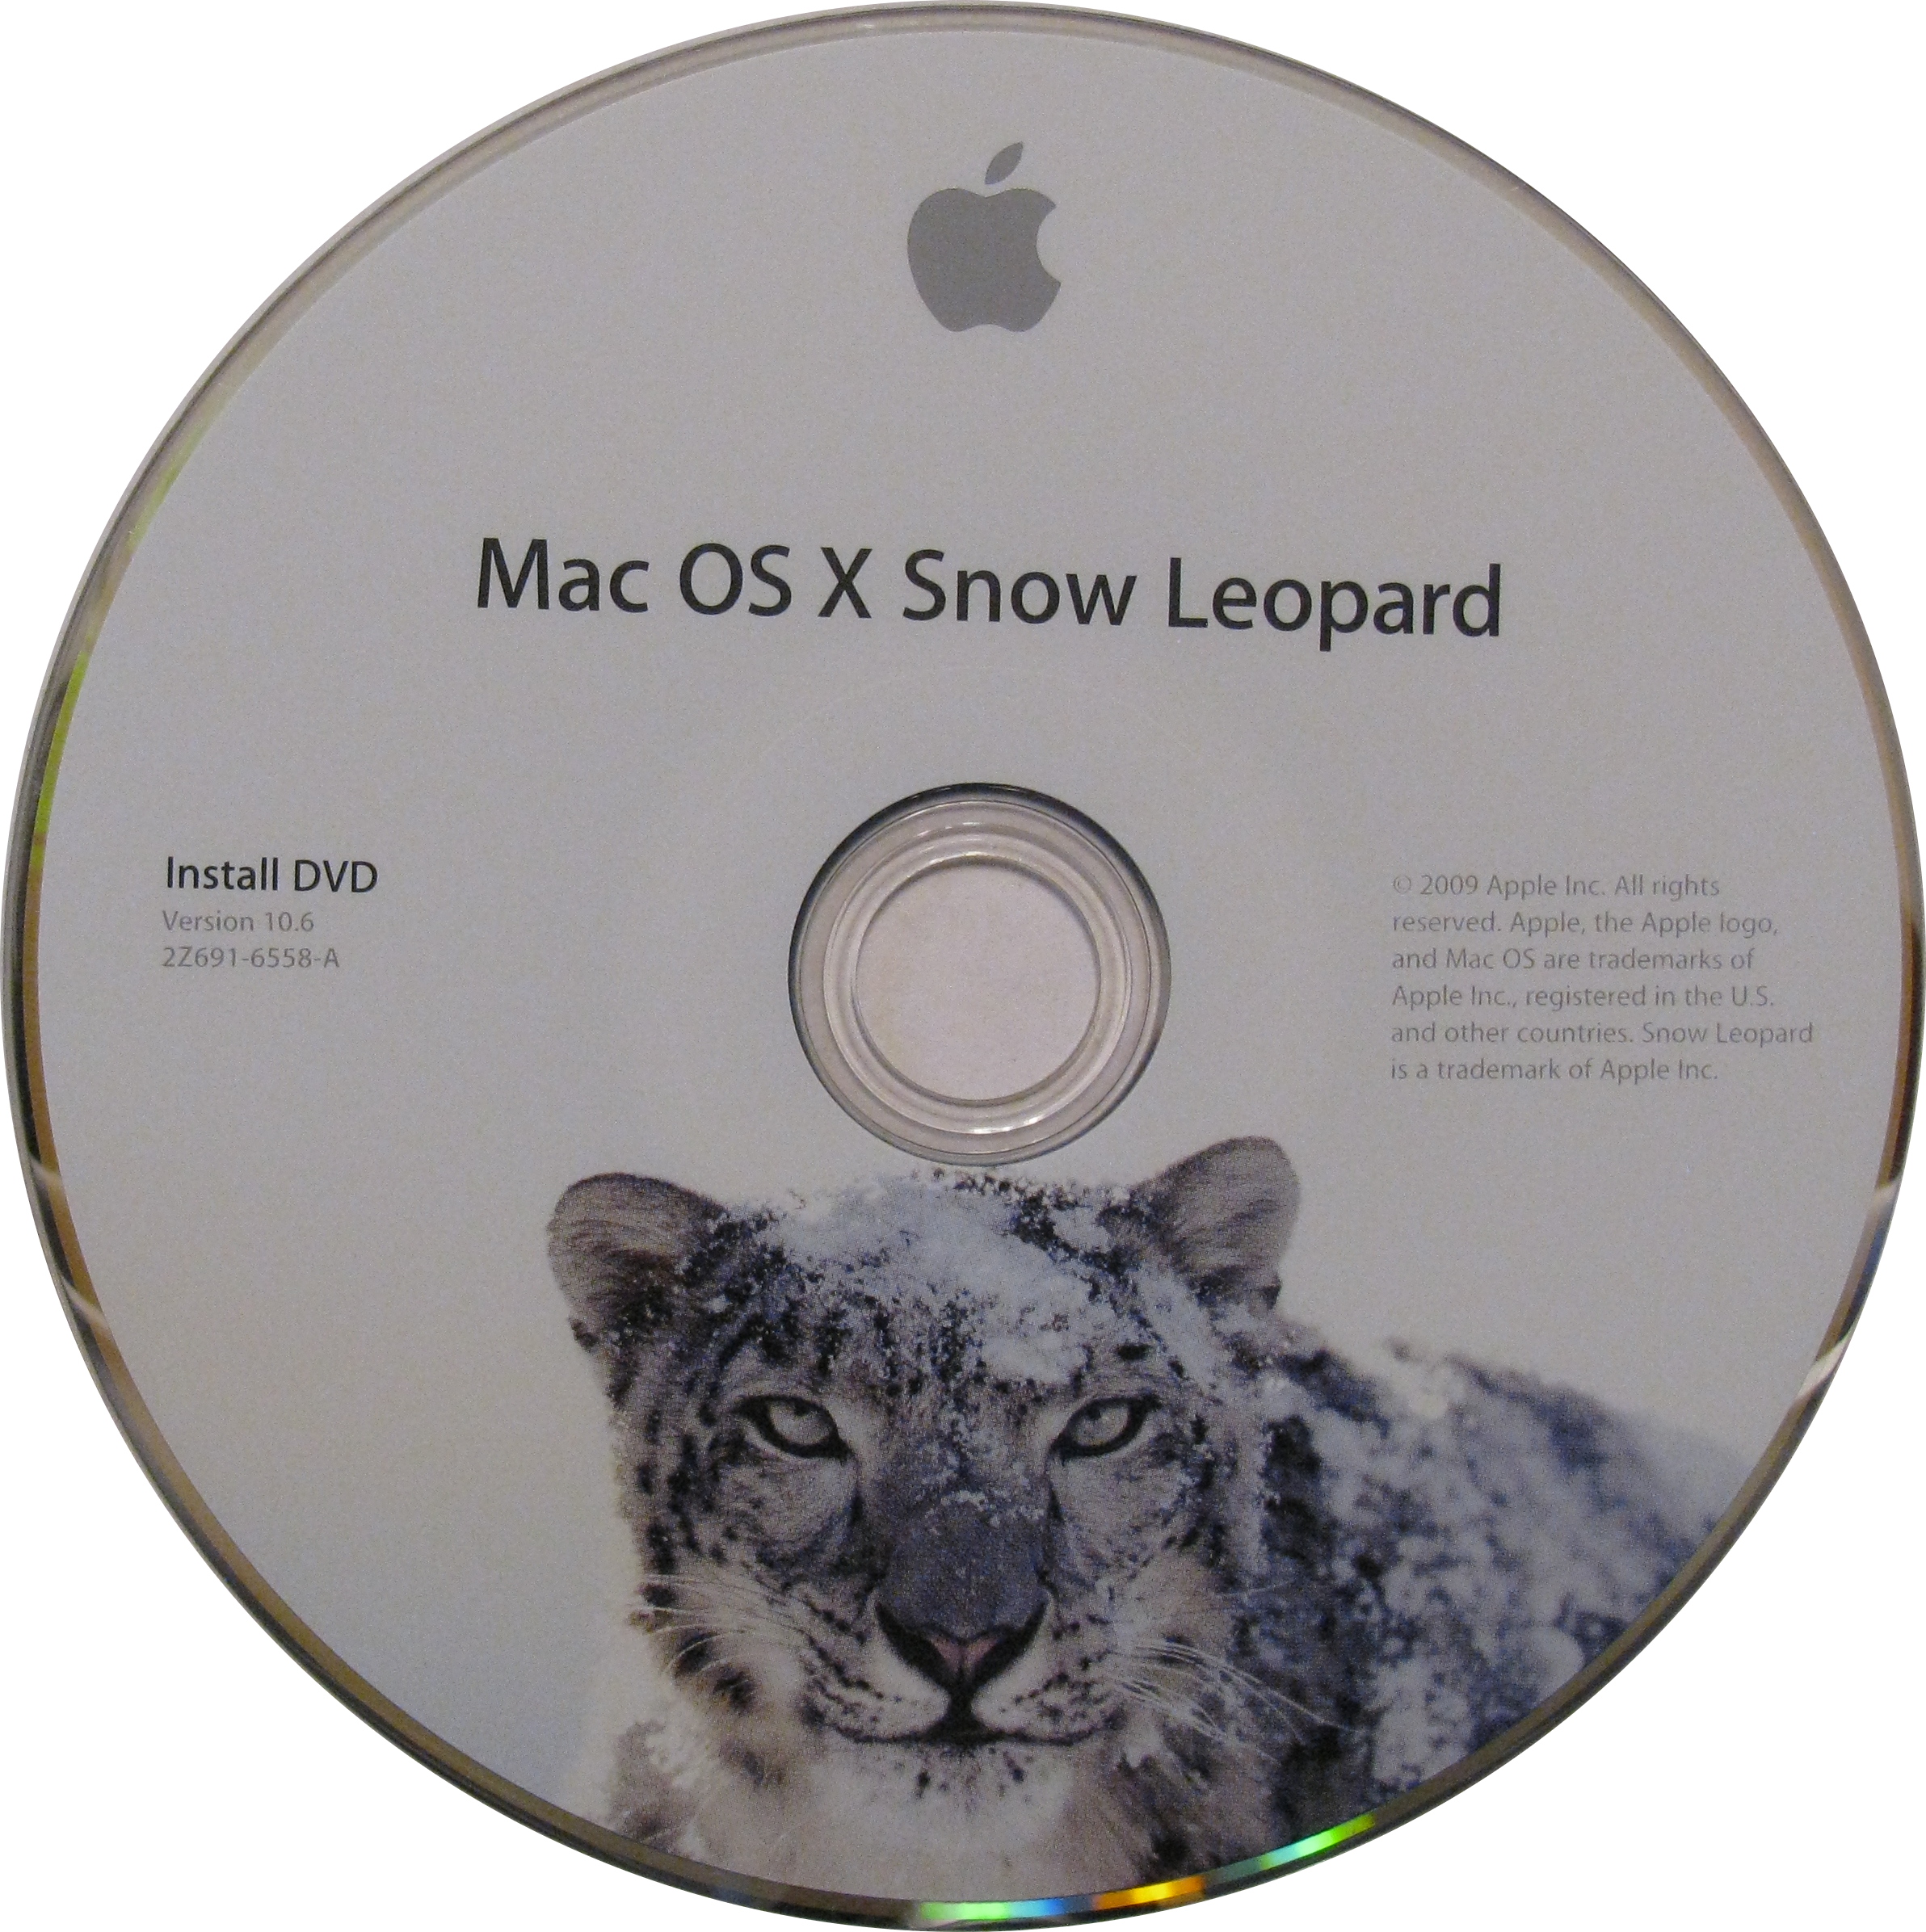 Mac Snow Leopard Manual Free Download